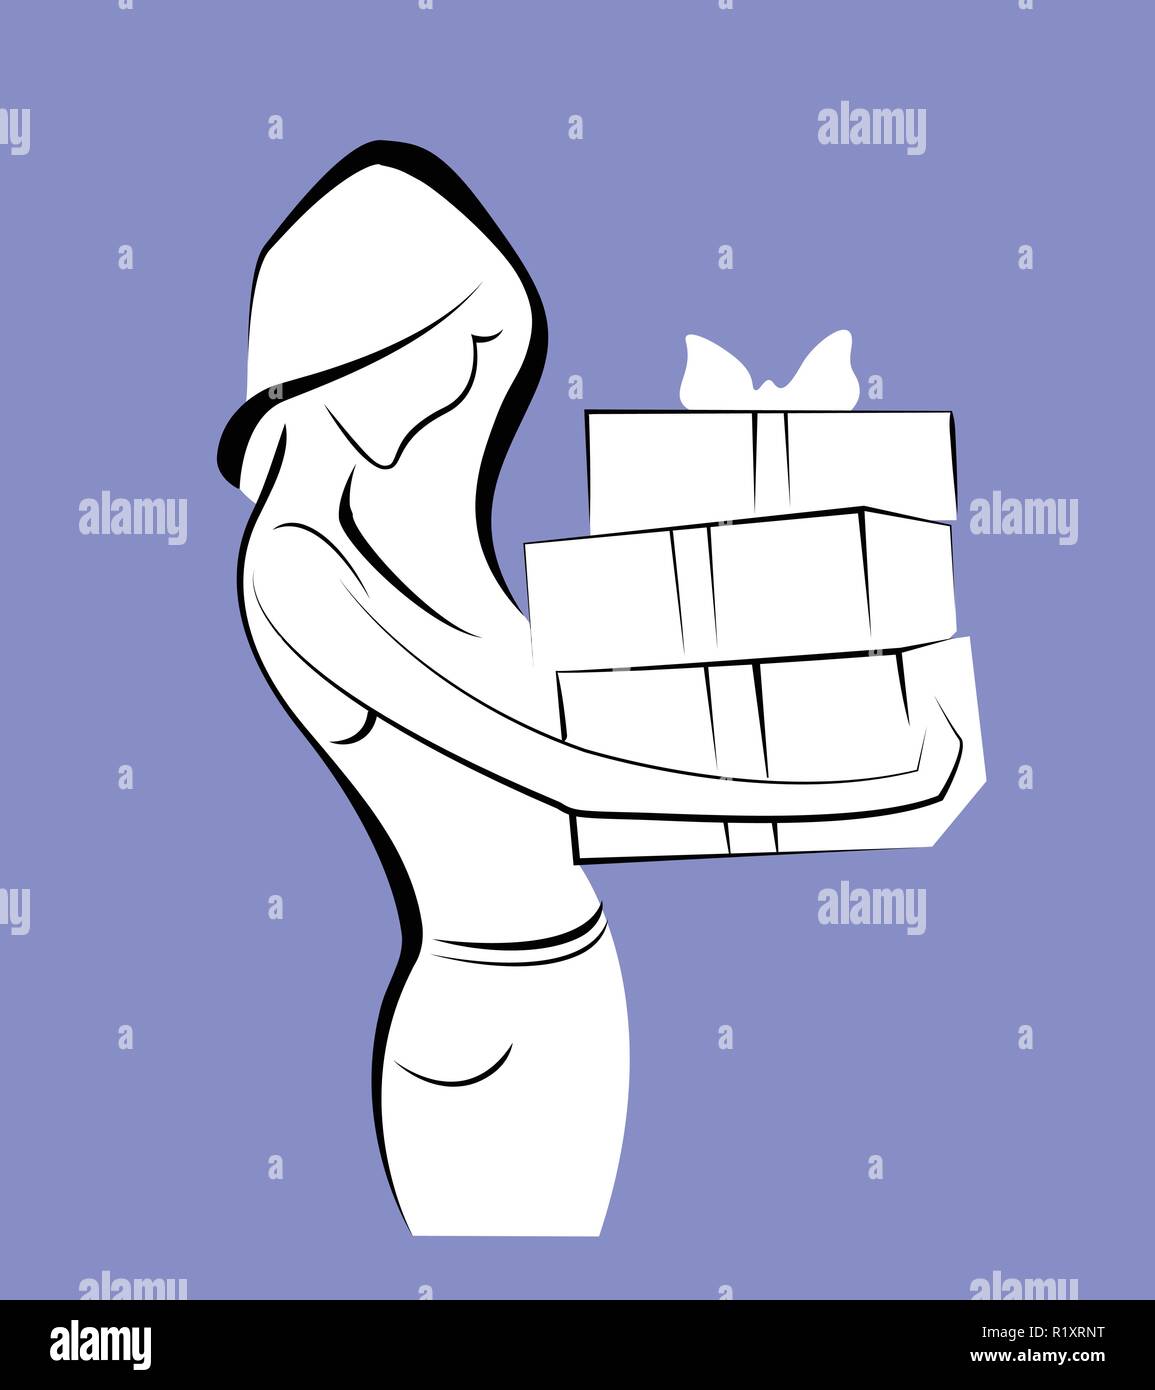 Junge Frau mit Geschenkverpackung. Bild Stock Vektor